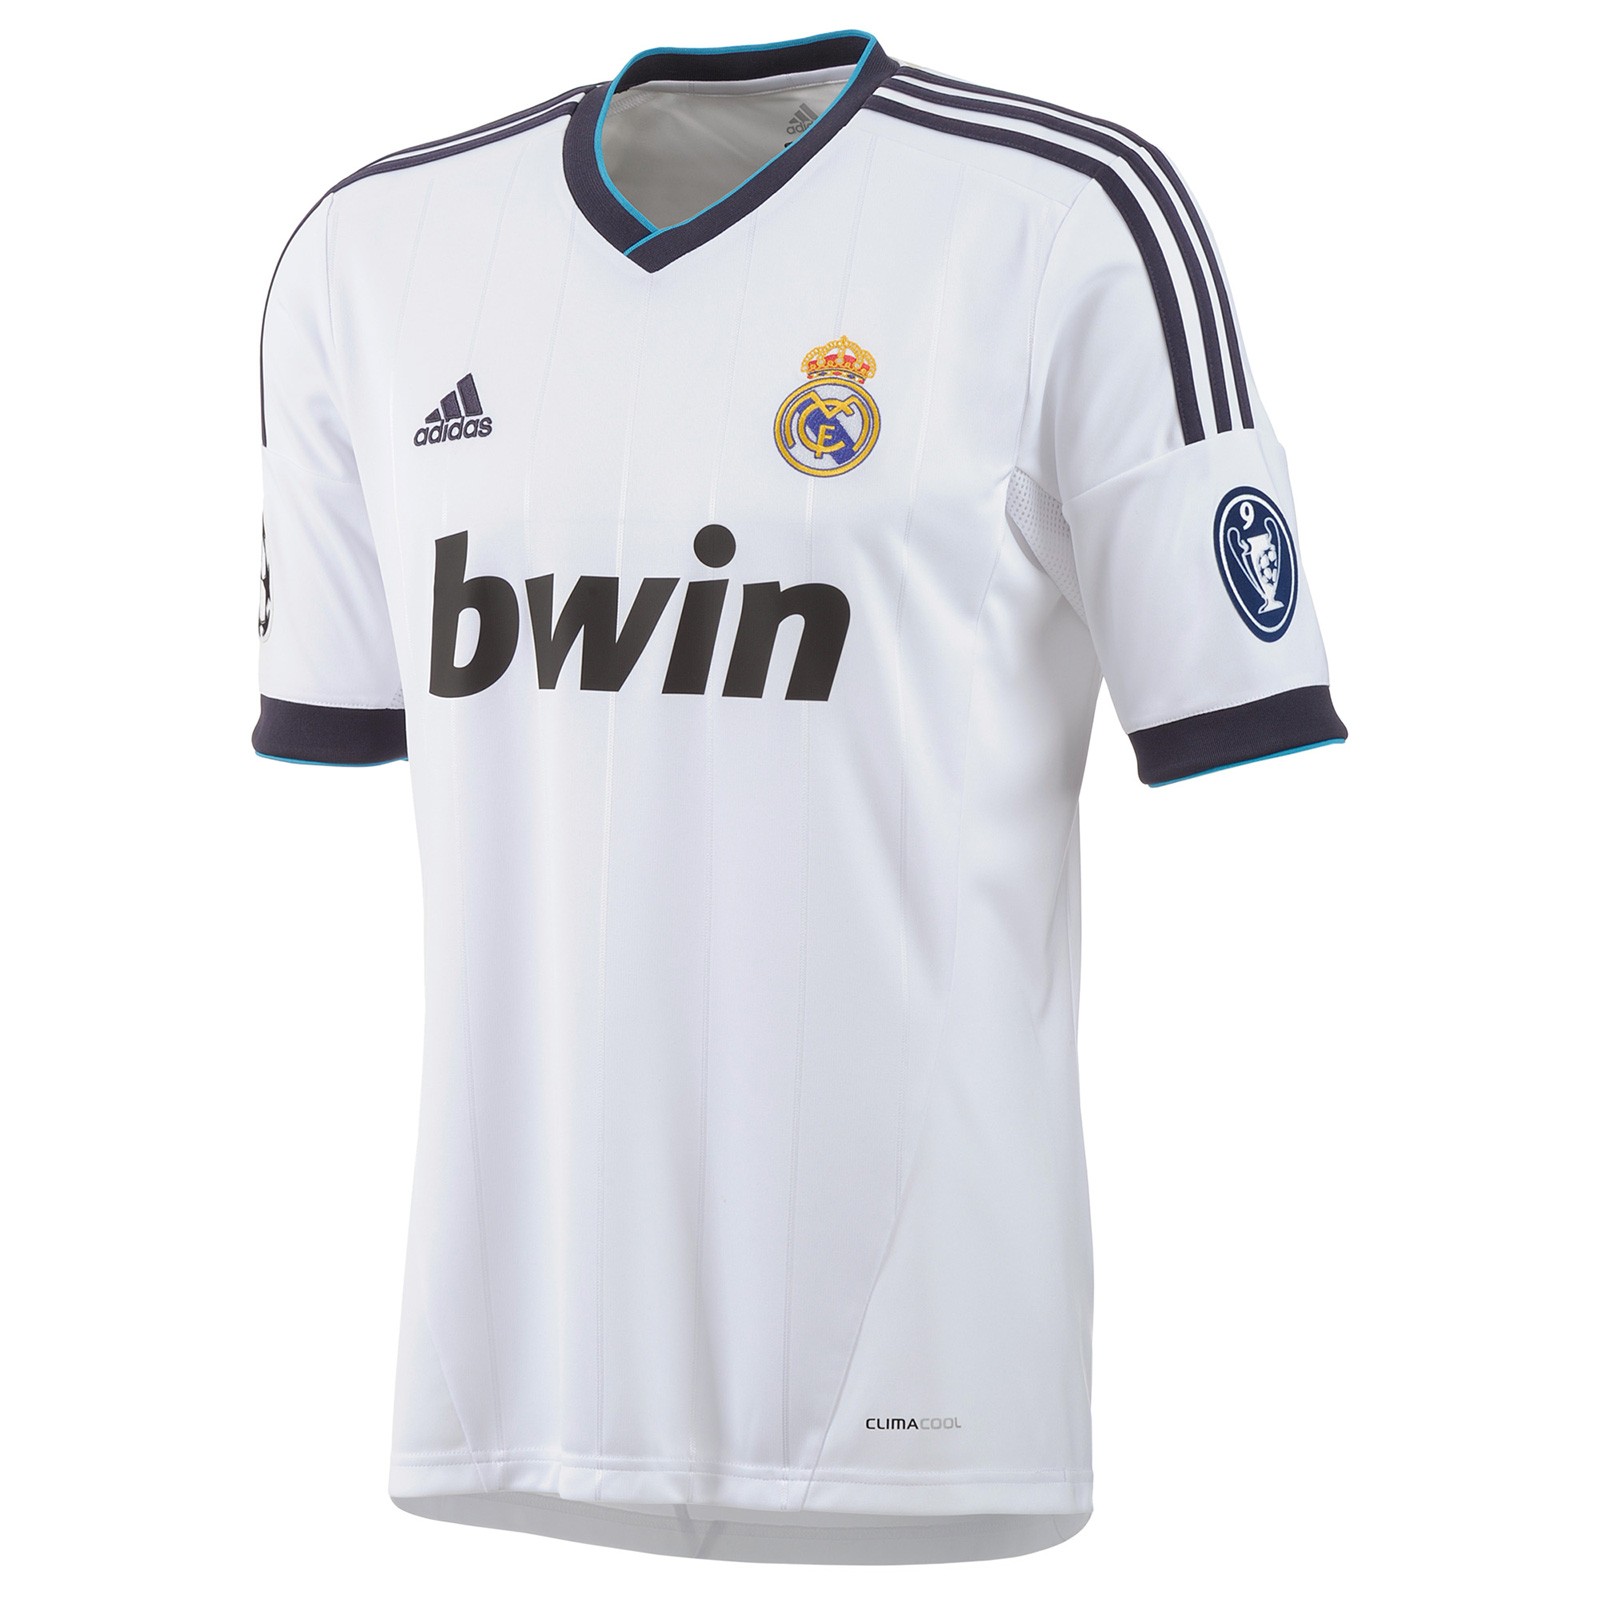 皇家马德里2012\/13赛季欧冠球迷版主场球衣